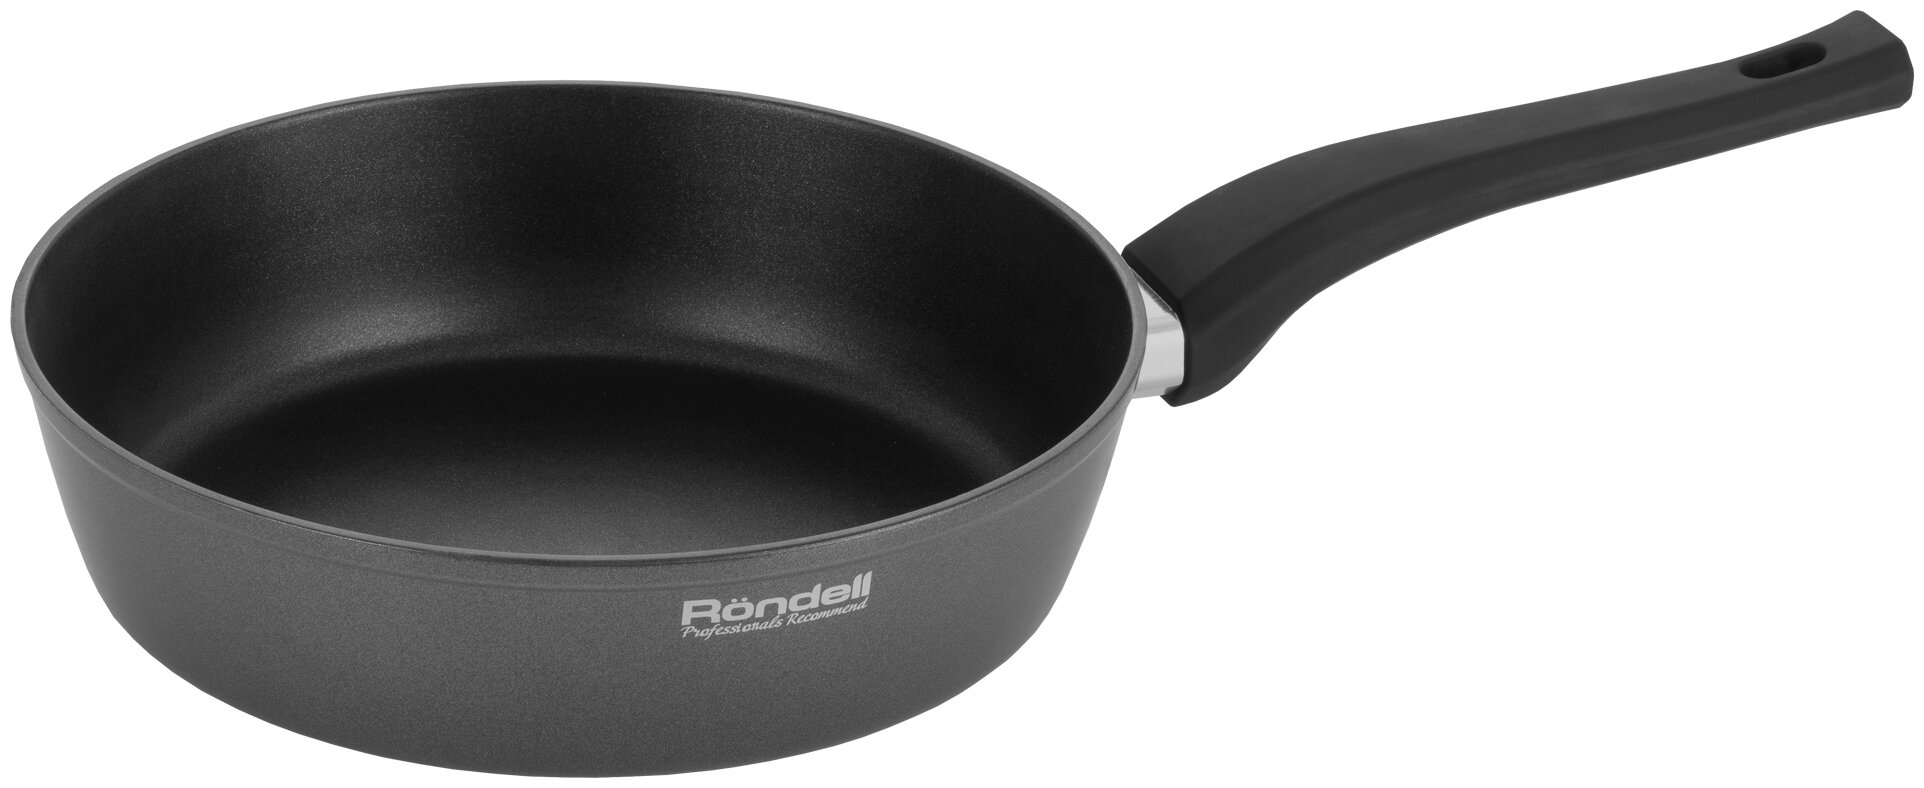 Сковорода Rondell Principal, диаметр 28 см